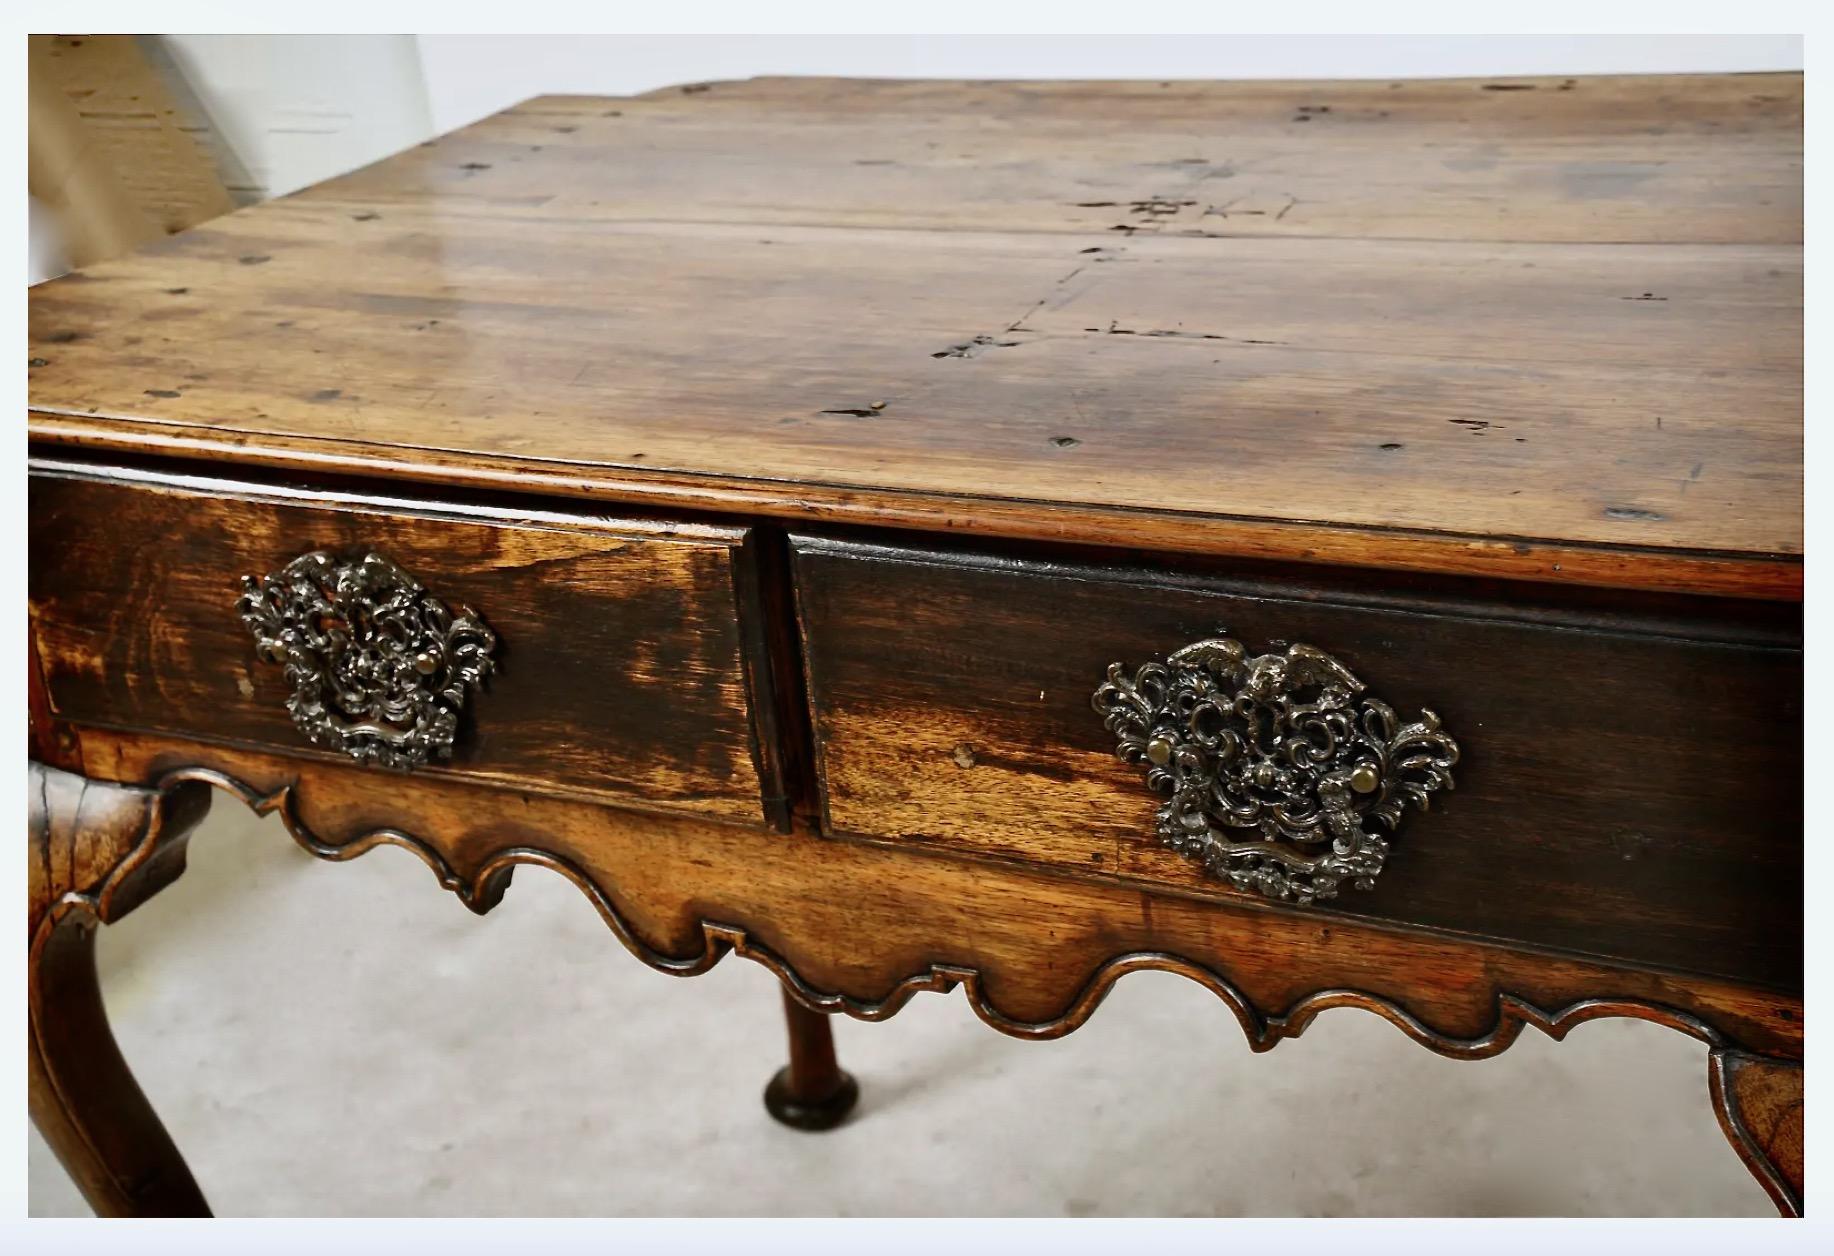 Belle table d'écriture ou d'appoint de style rococo suédois du XVIIIe siècle, à deux tiroirs, avec une jupe finement sculptée et des pieds cabriole. La forme inhabituelle du plateau fait de cette table un véritable pôle d'attraction. Ébanisée à